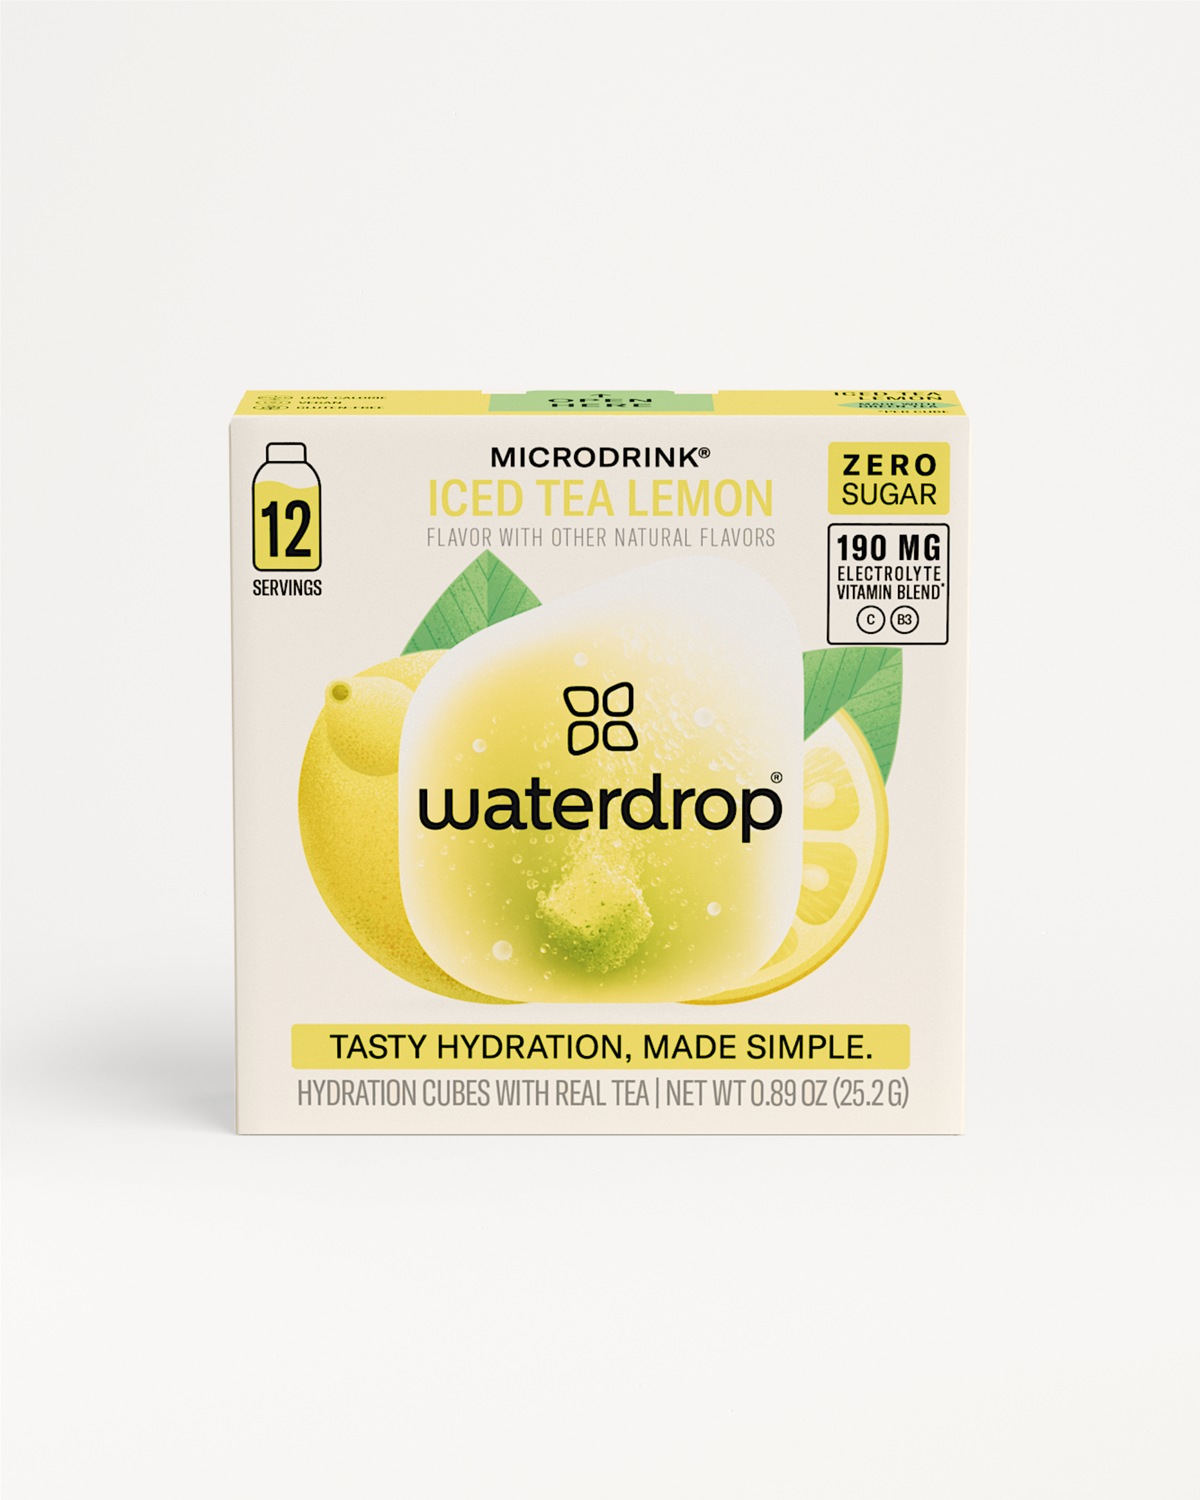 Microdrink ICED TEA LEMON: Order now | waterdrop®